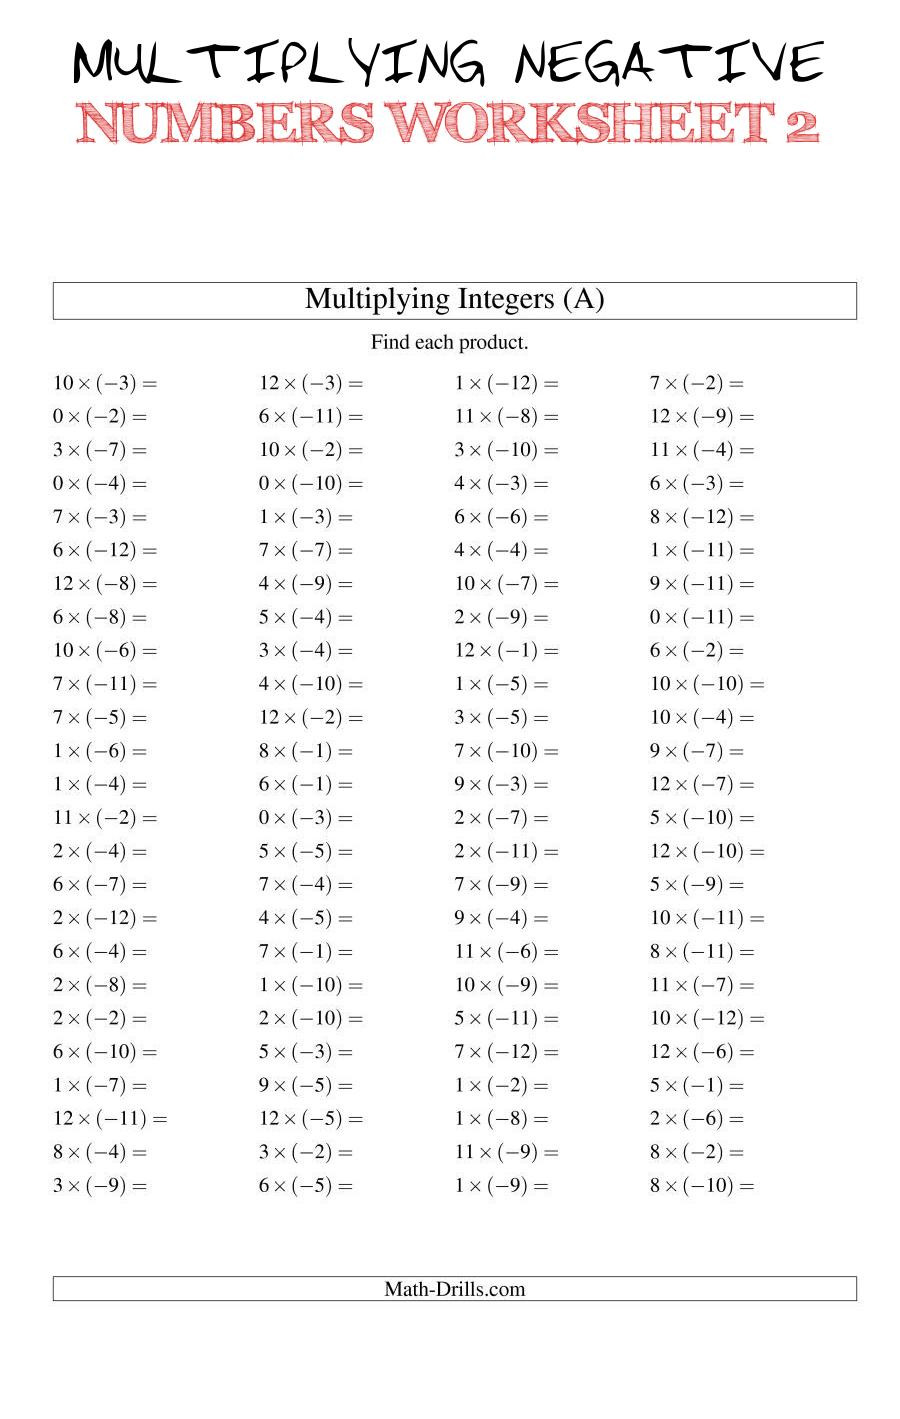 Multiplying Complex Numbers Worksheet Multiplying Negative Numbers Worksheet 2 the Multiplying